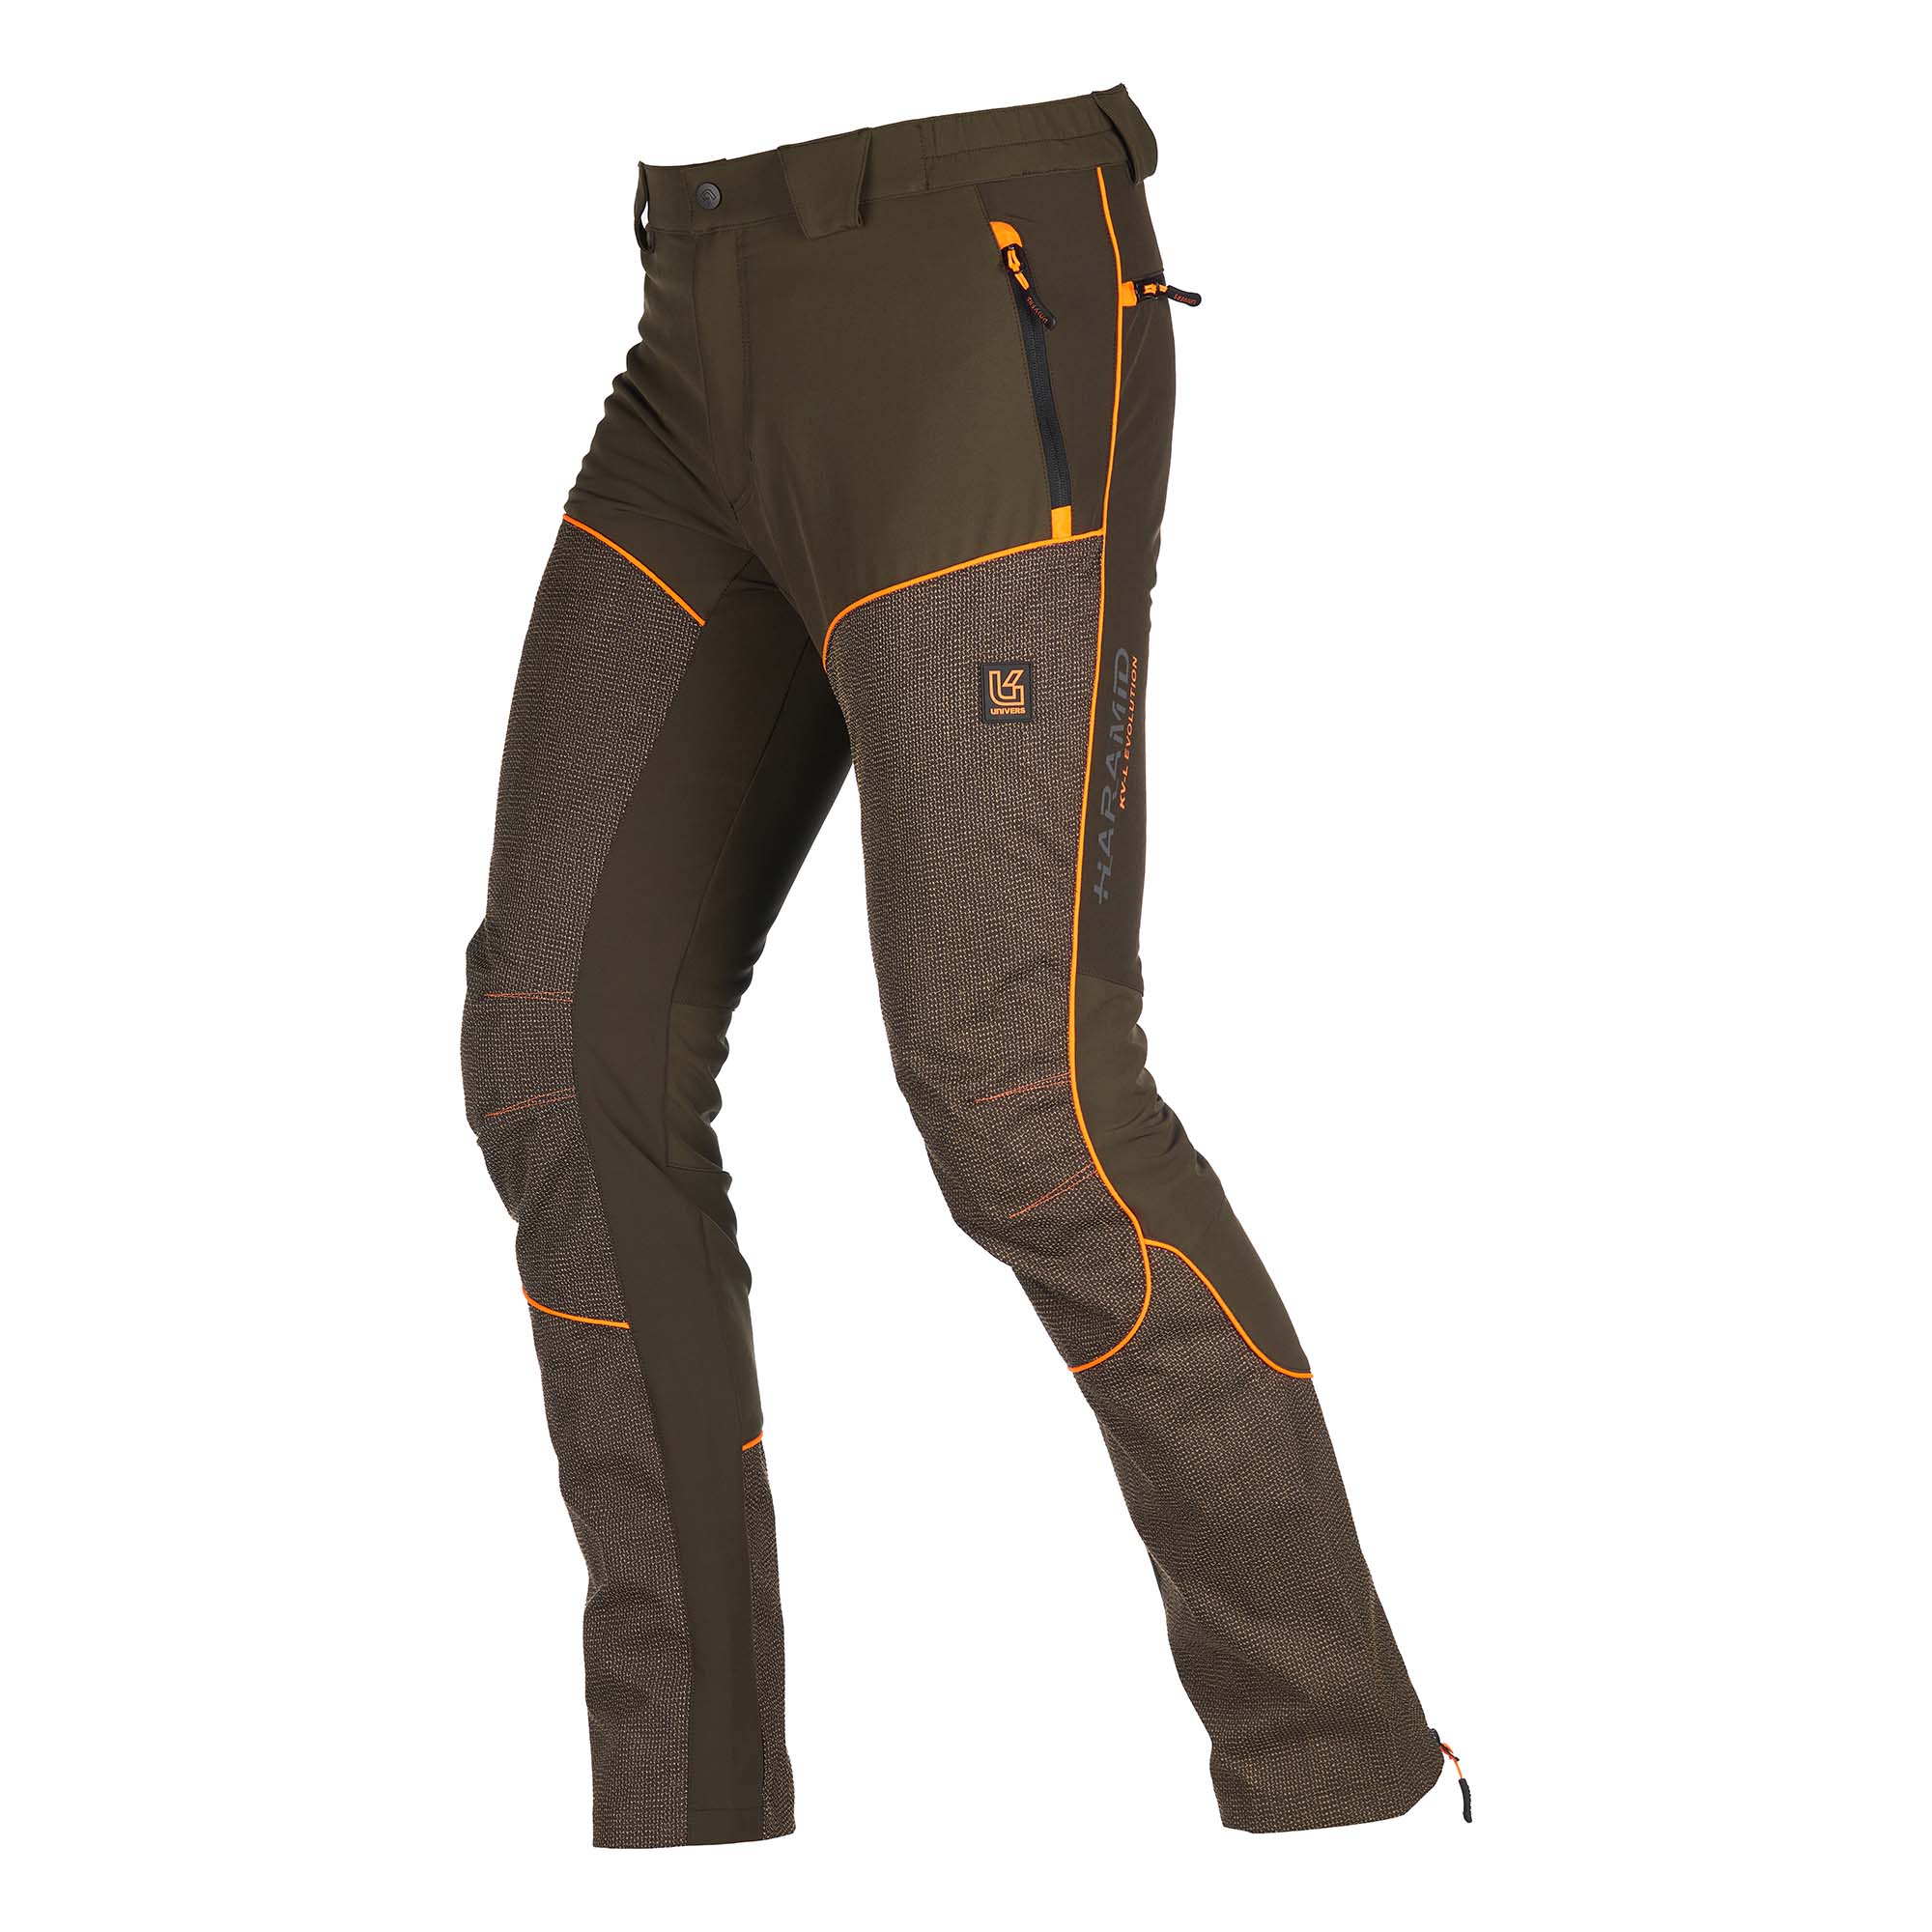 Pantalone-ARMOR-Kevlar-1-92531-392